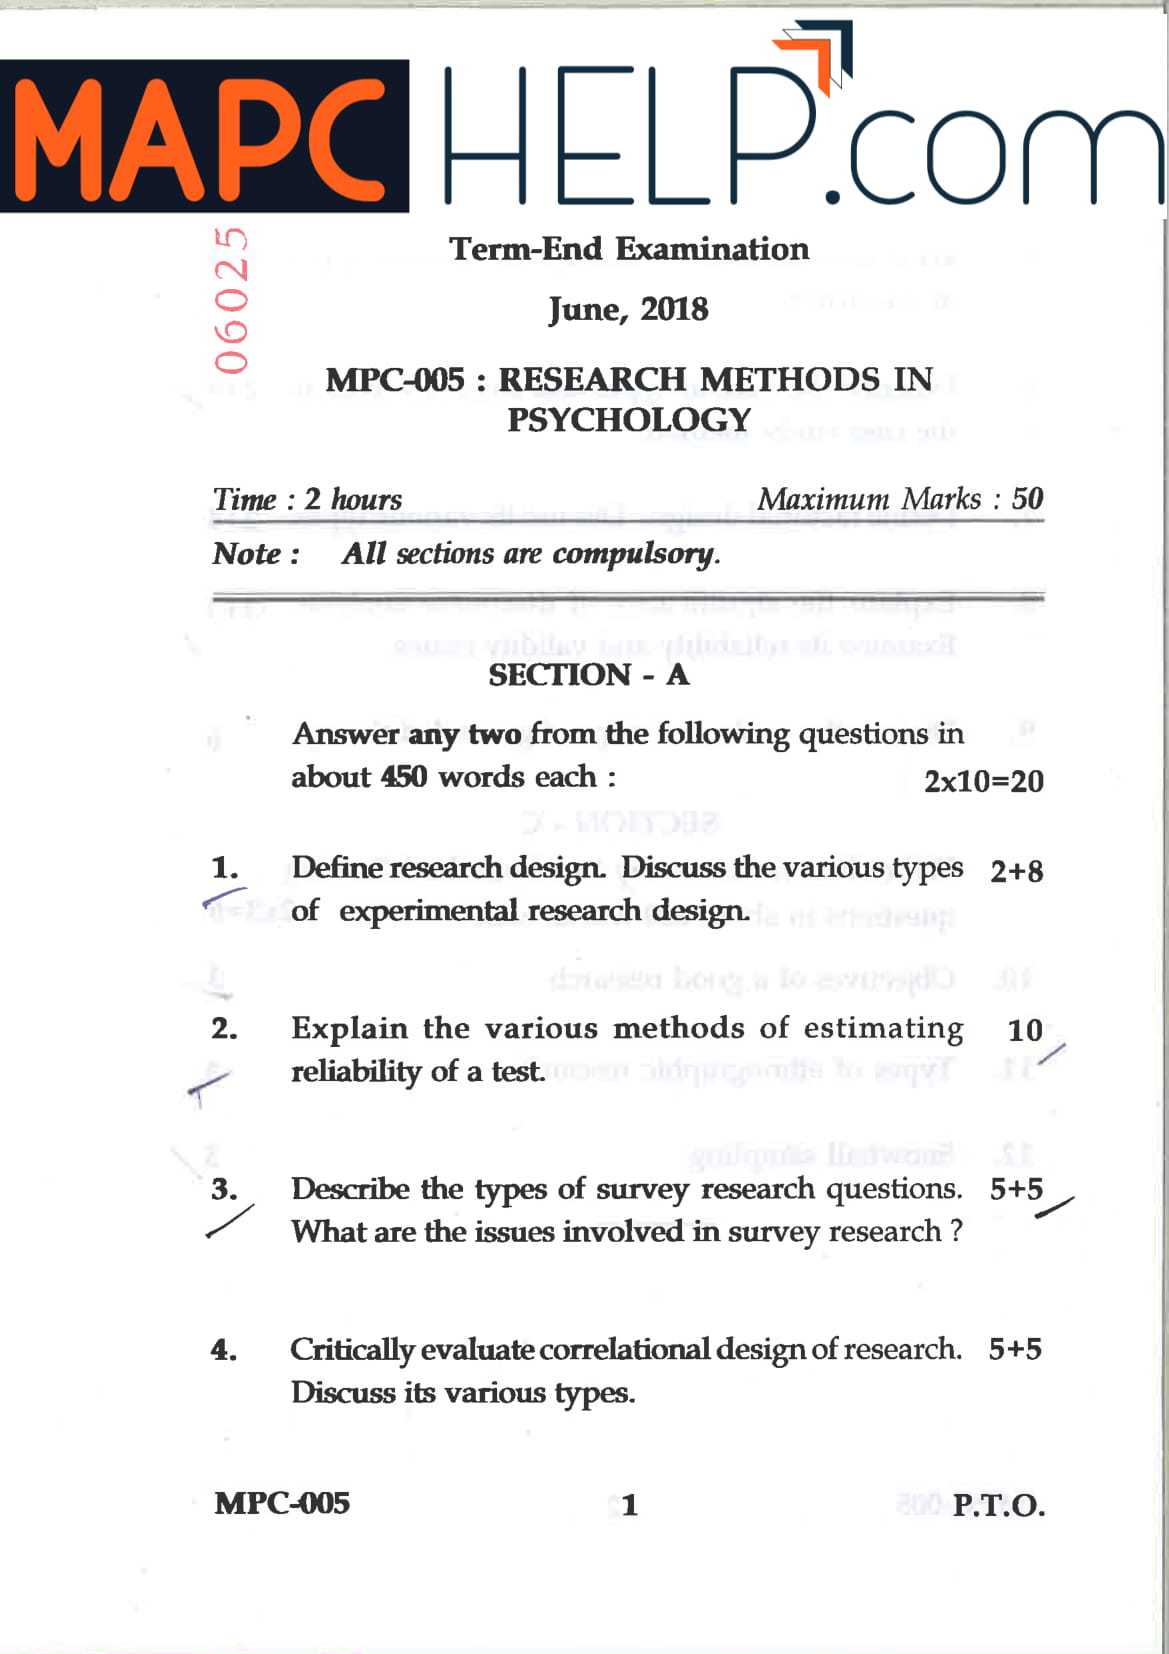 MPC-005 Jun 18 Question Paper - MAPC Help